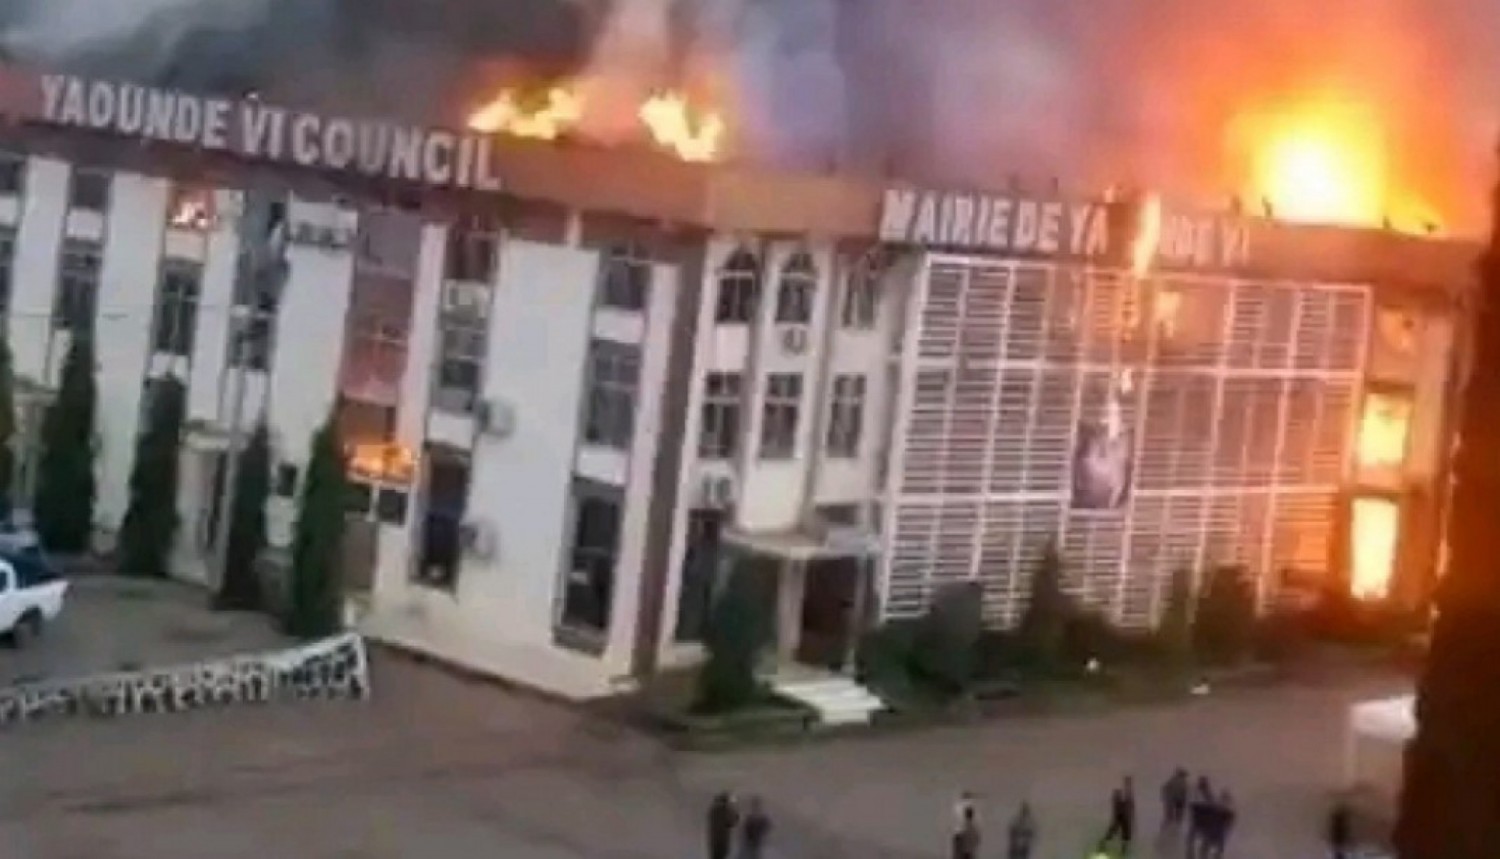 Cameroun: Les archives de l'État civil détruits après l'incendie de la mairie de Yaoundé VI